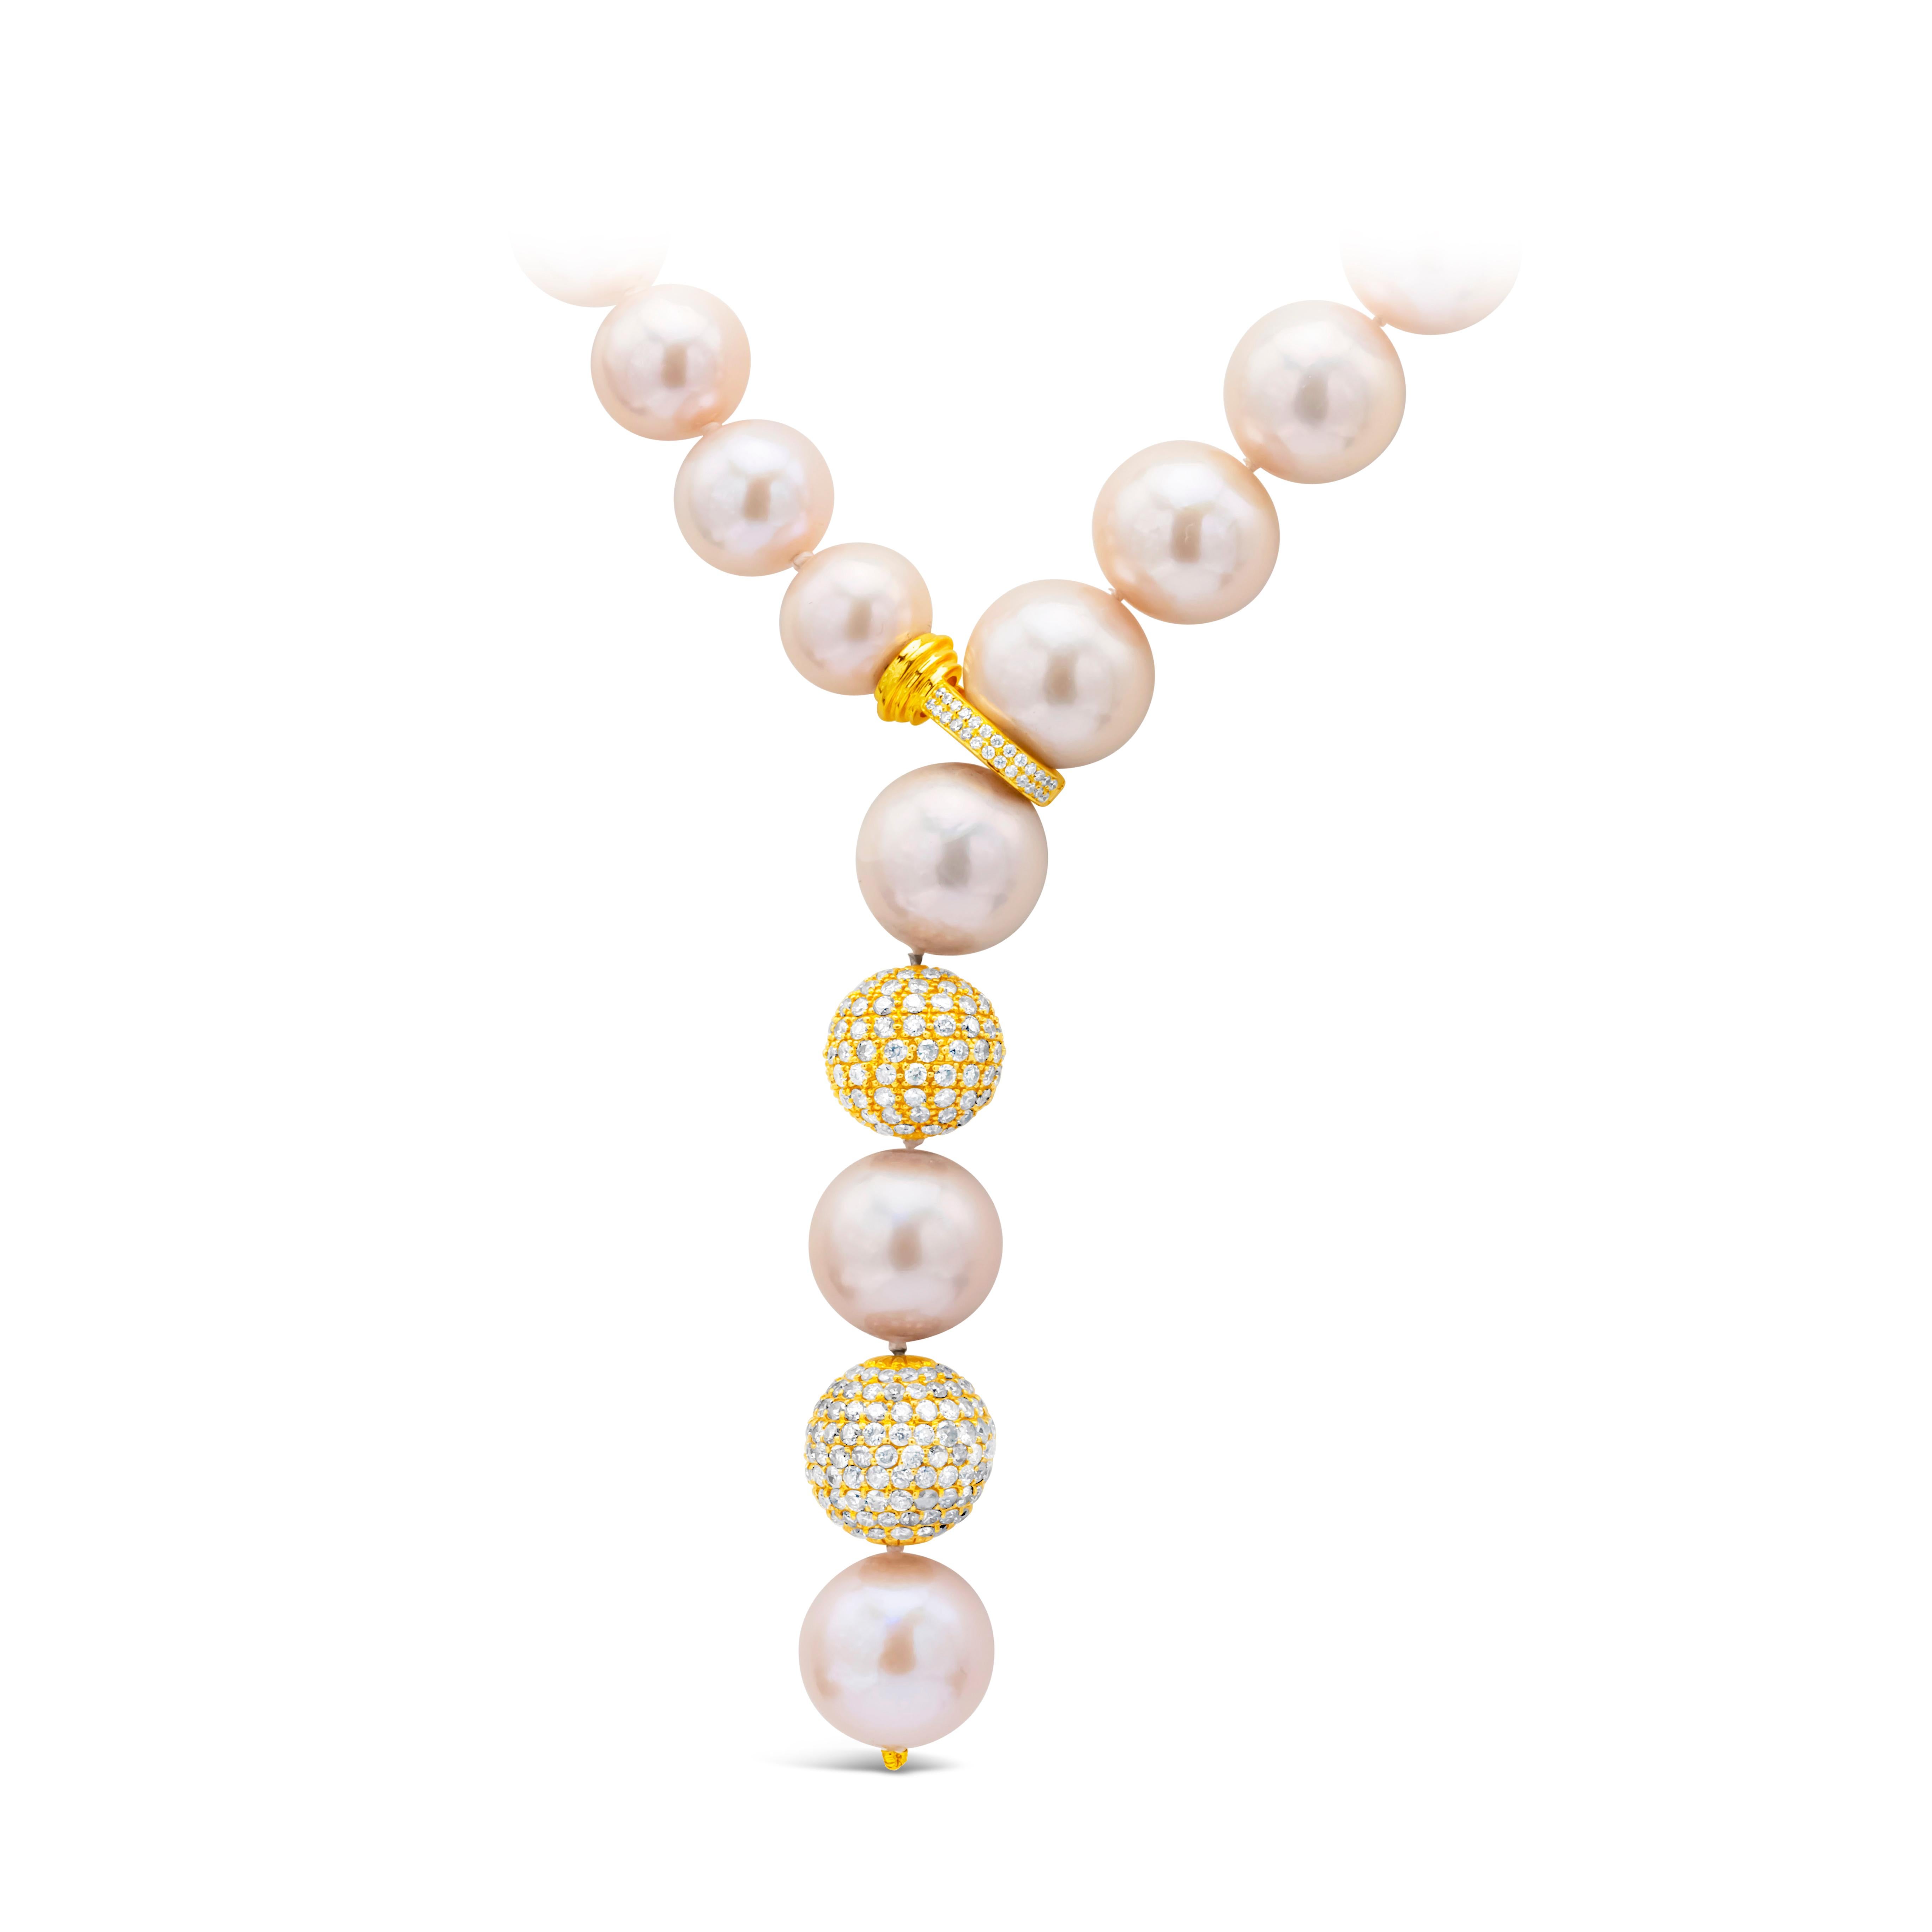 Ce magnifique collier de perles présente une perle rose des mers du Sud de 11,5 à 14,5 mm avec un fermoir en diamant et deux boules incrustées de diamants. Les diamants pèsent 4,50 carats au total. Fabriqué en or jaune 18 carats.

Ce modèle est